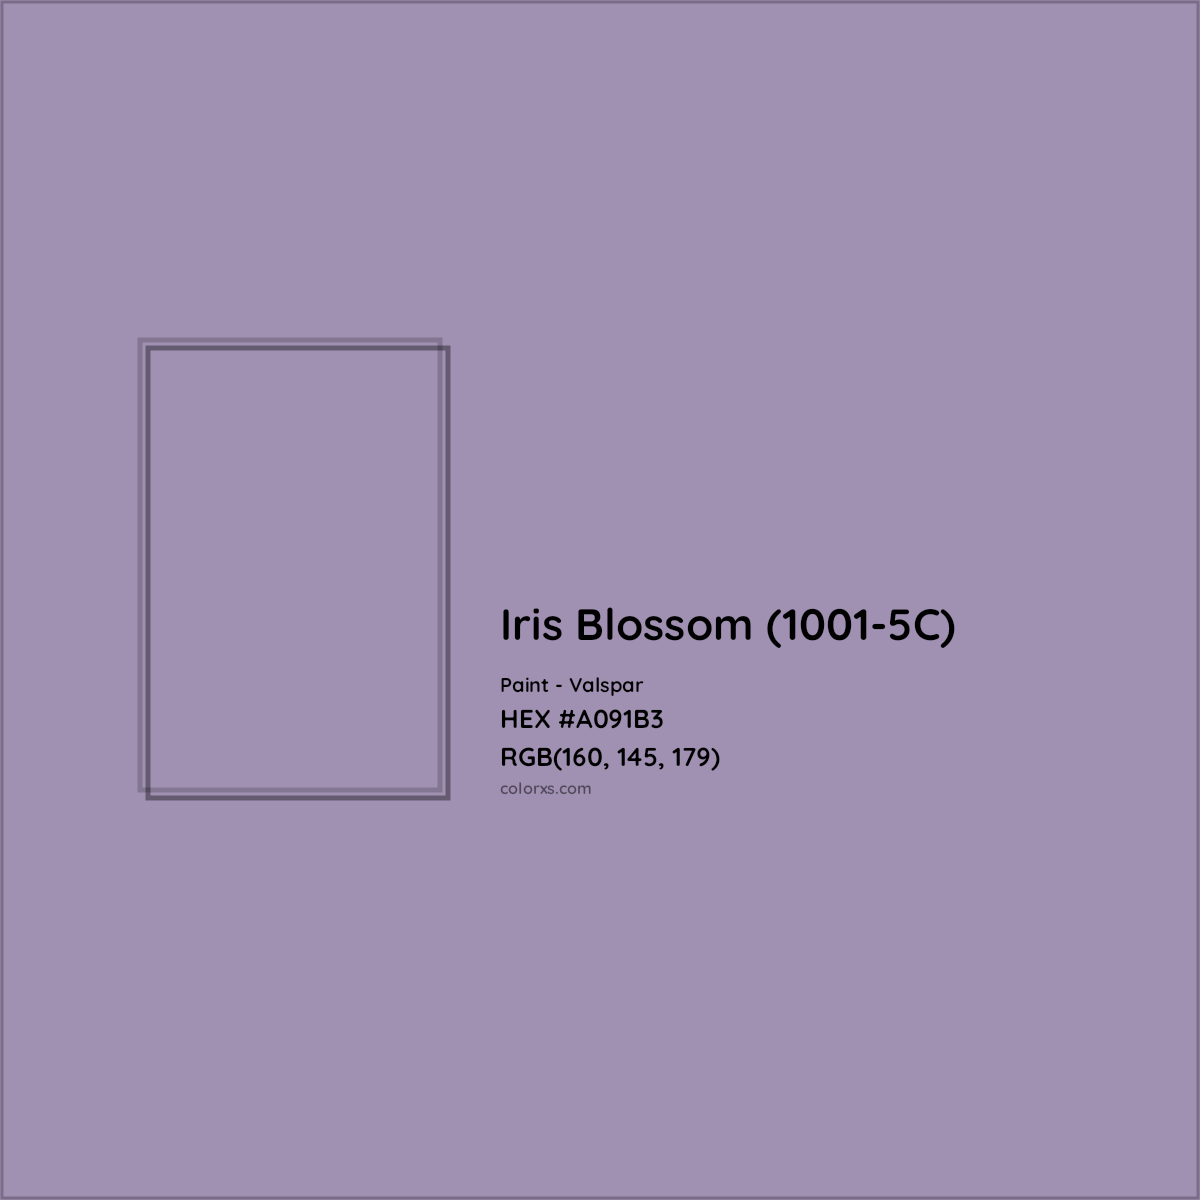 HEX #A091B3 Iris Blossom (1001-5C) Paint Valspar - Color Code